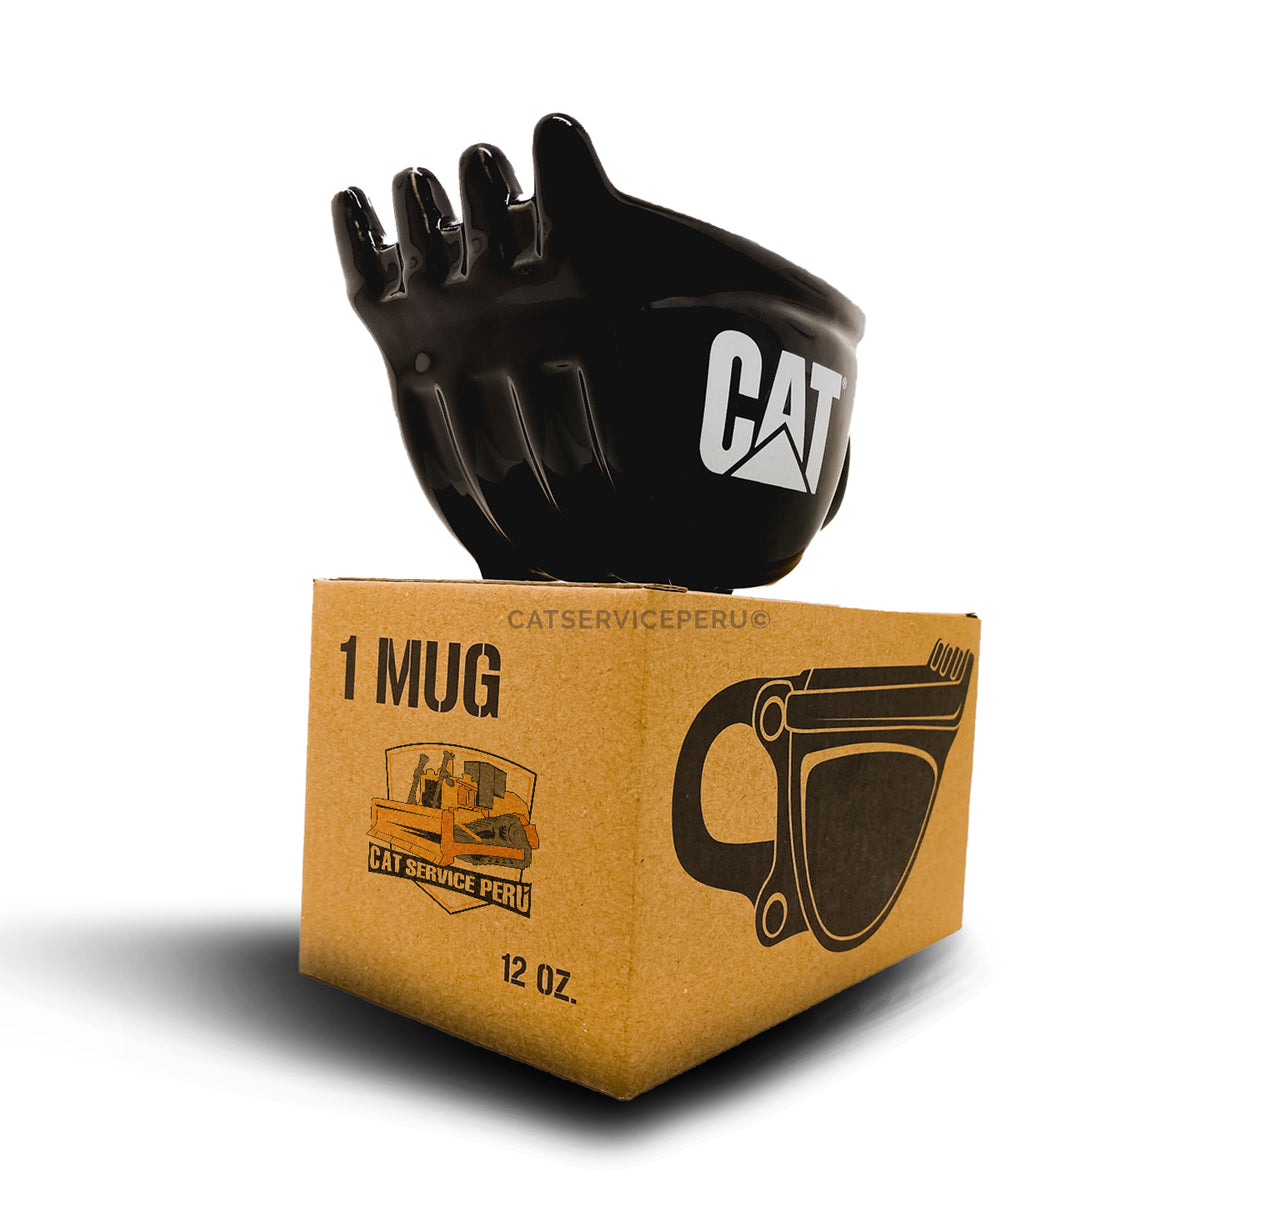 TCA002-LQ Taza Cat en Forma de Cucharon Taza Negra (Liquidación)